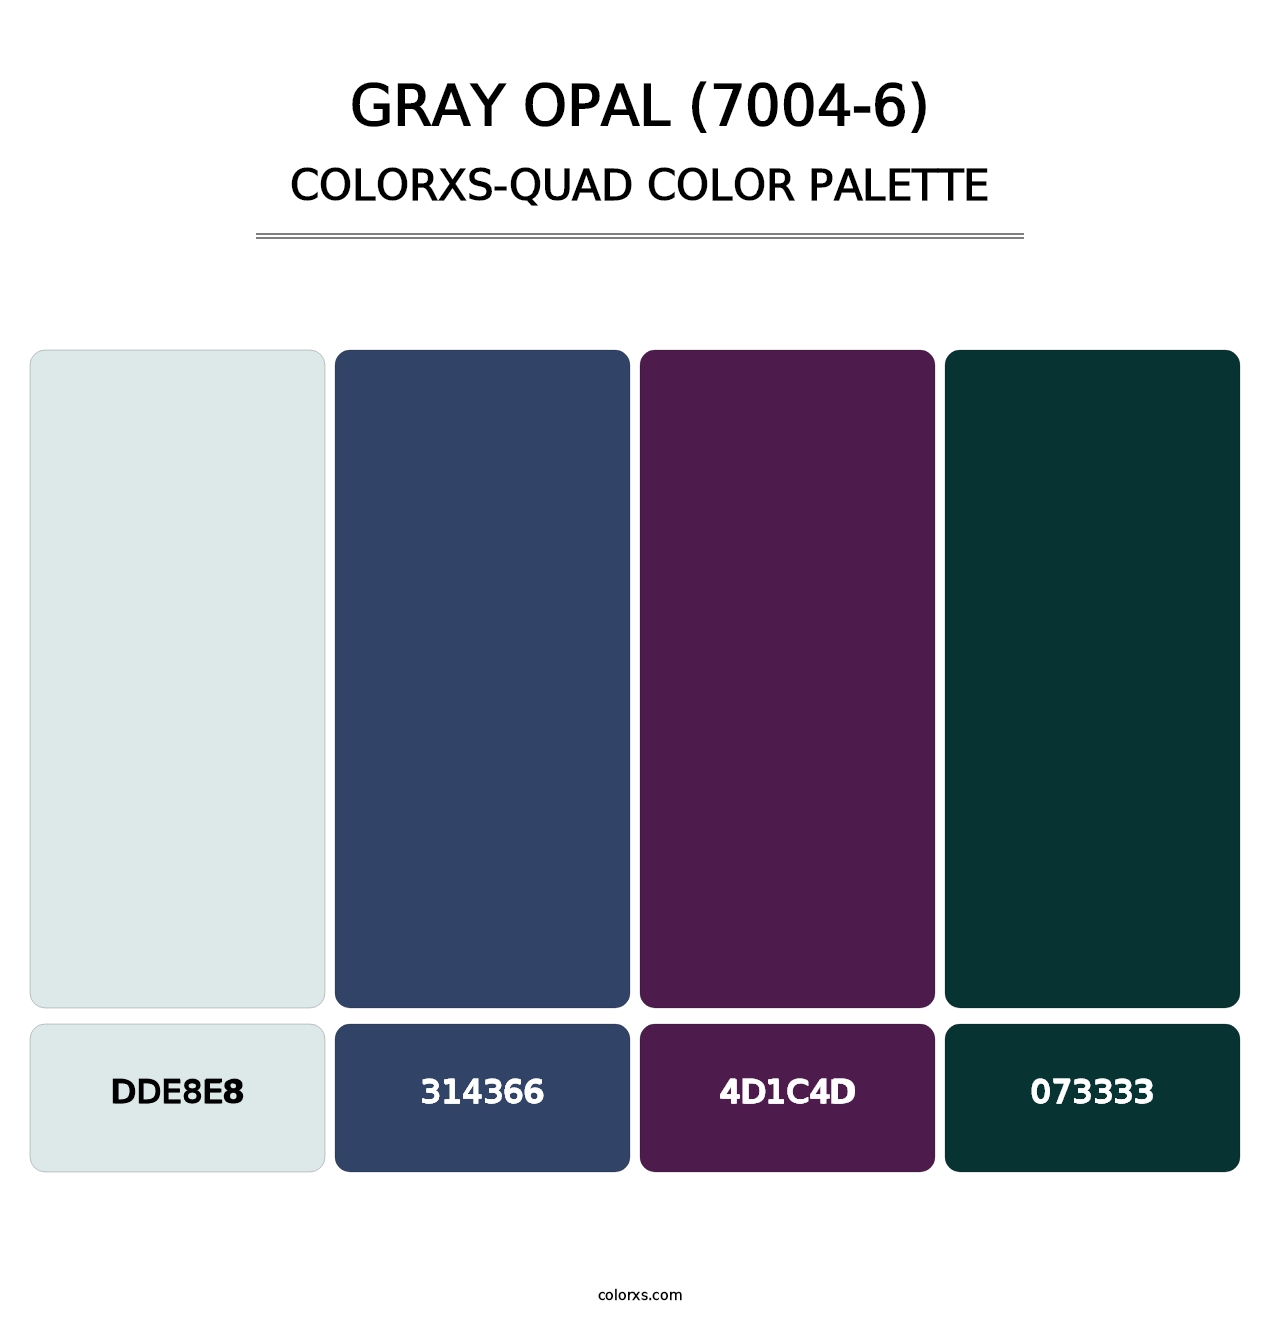 Gray Opal (7004-6) - Colorxs Quad Palette